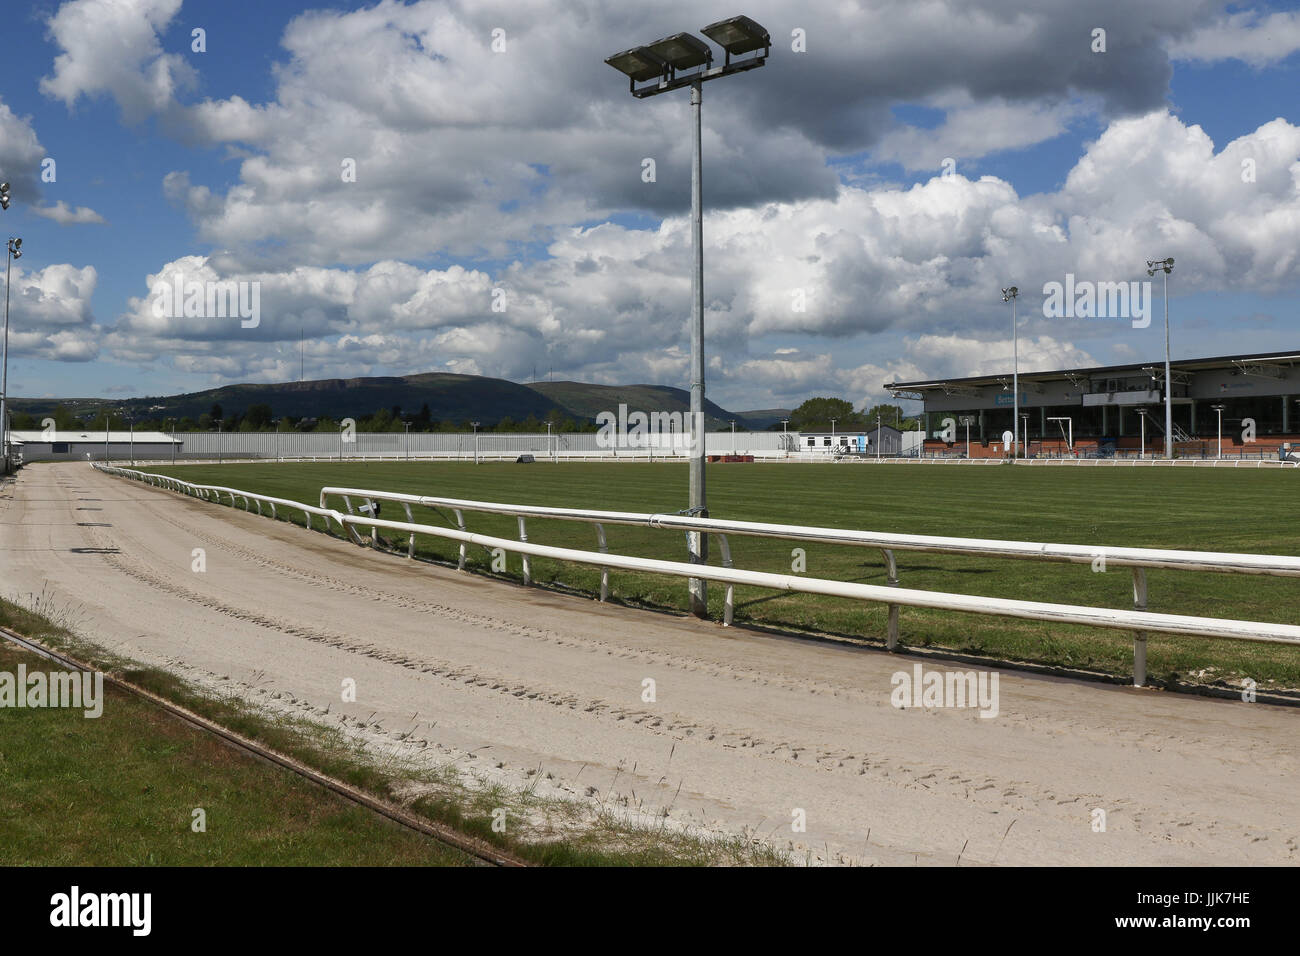 Der Track und Tribüne/Restaurant-Bereich im Drumbo Park Greyhound Stadium, Nordirland. Stockfoto